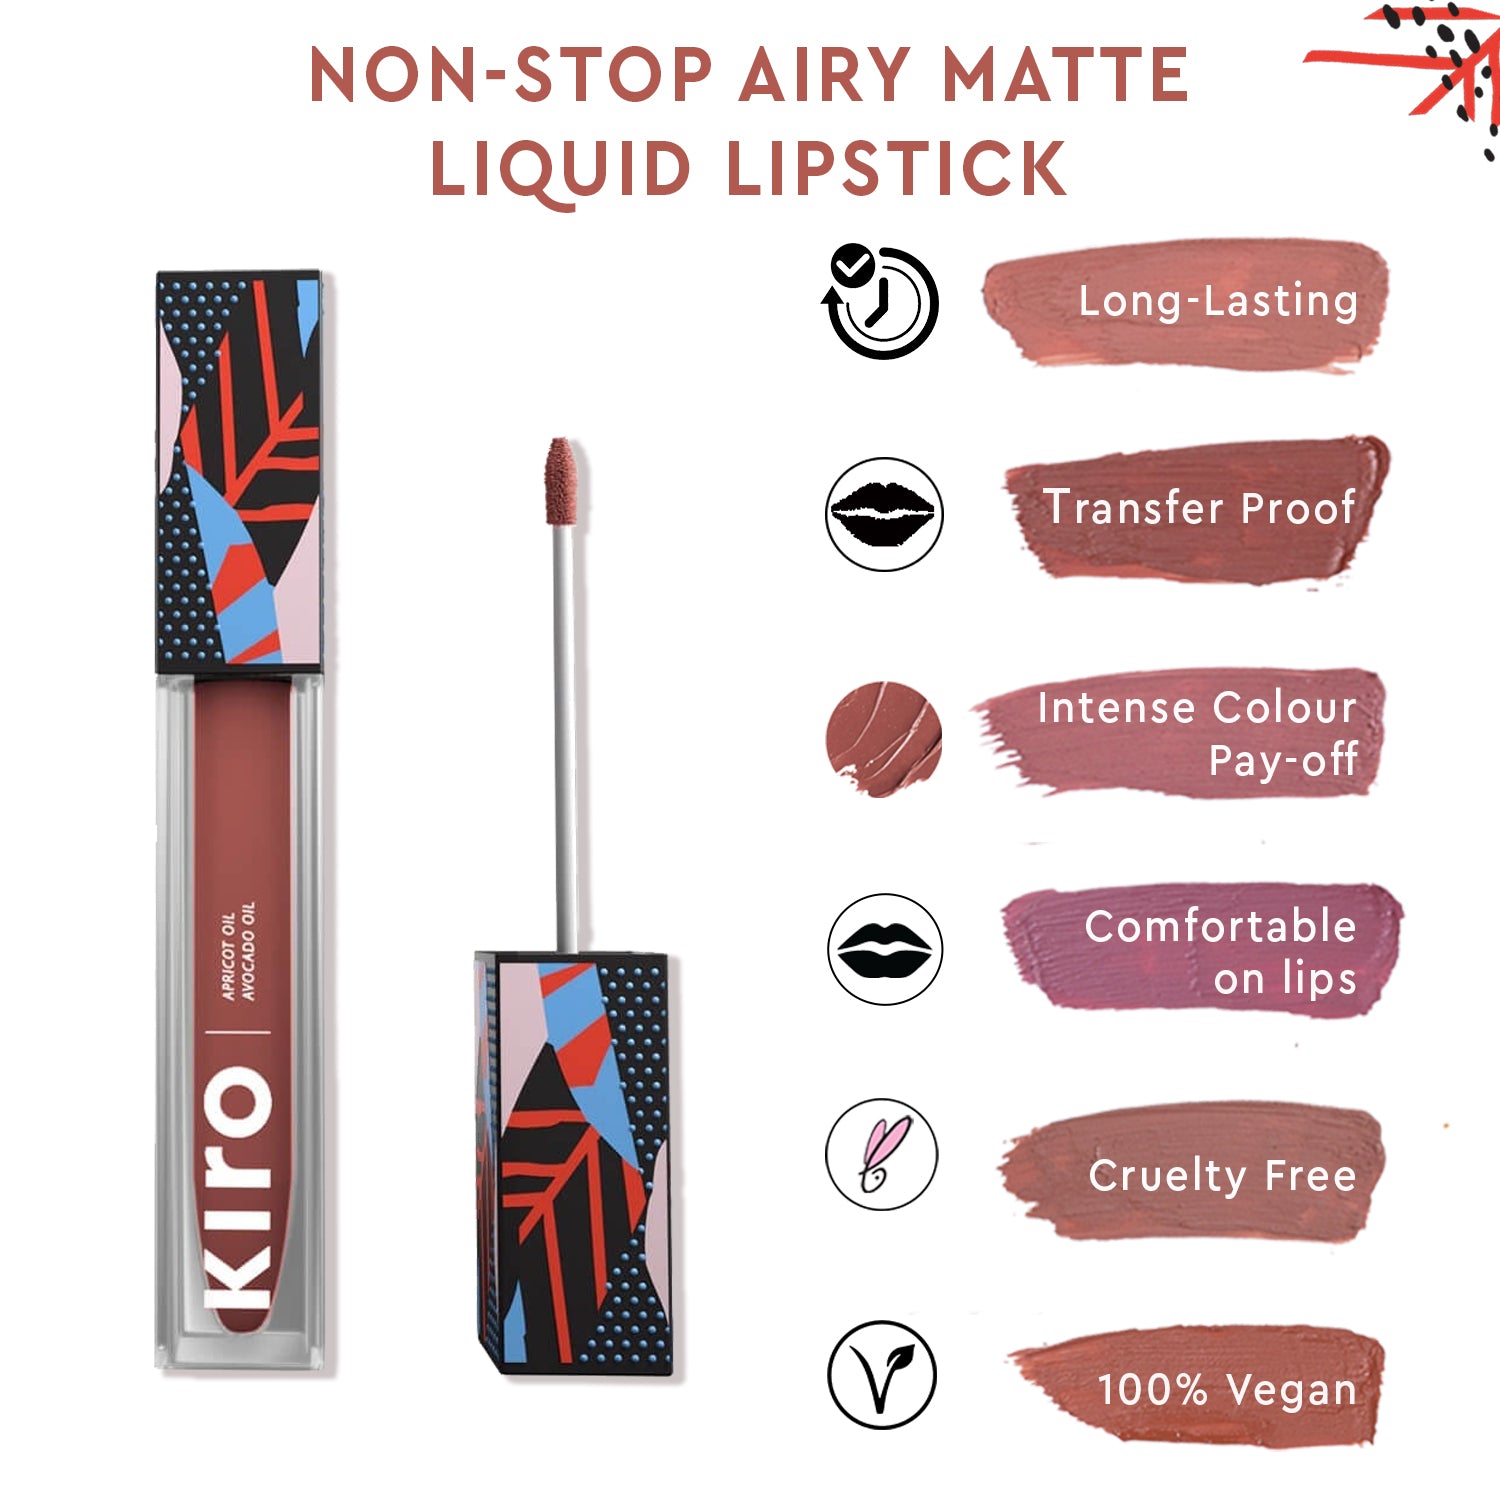 Non-stop Airy Matte Liquid Lipstick